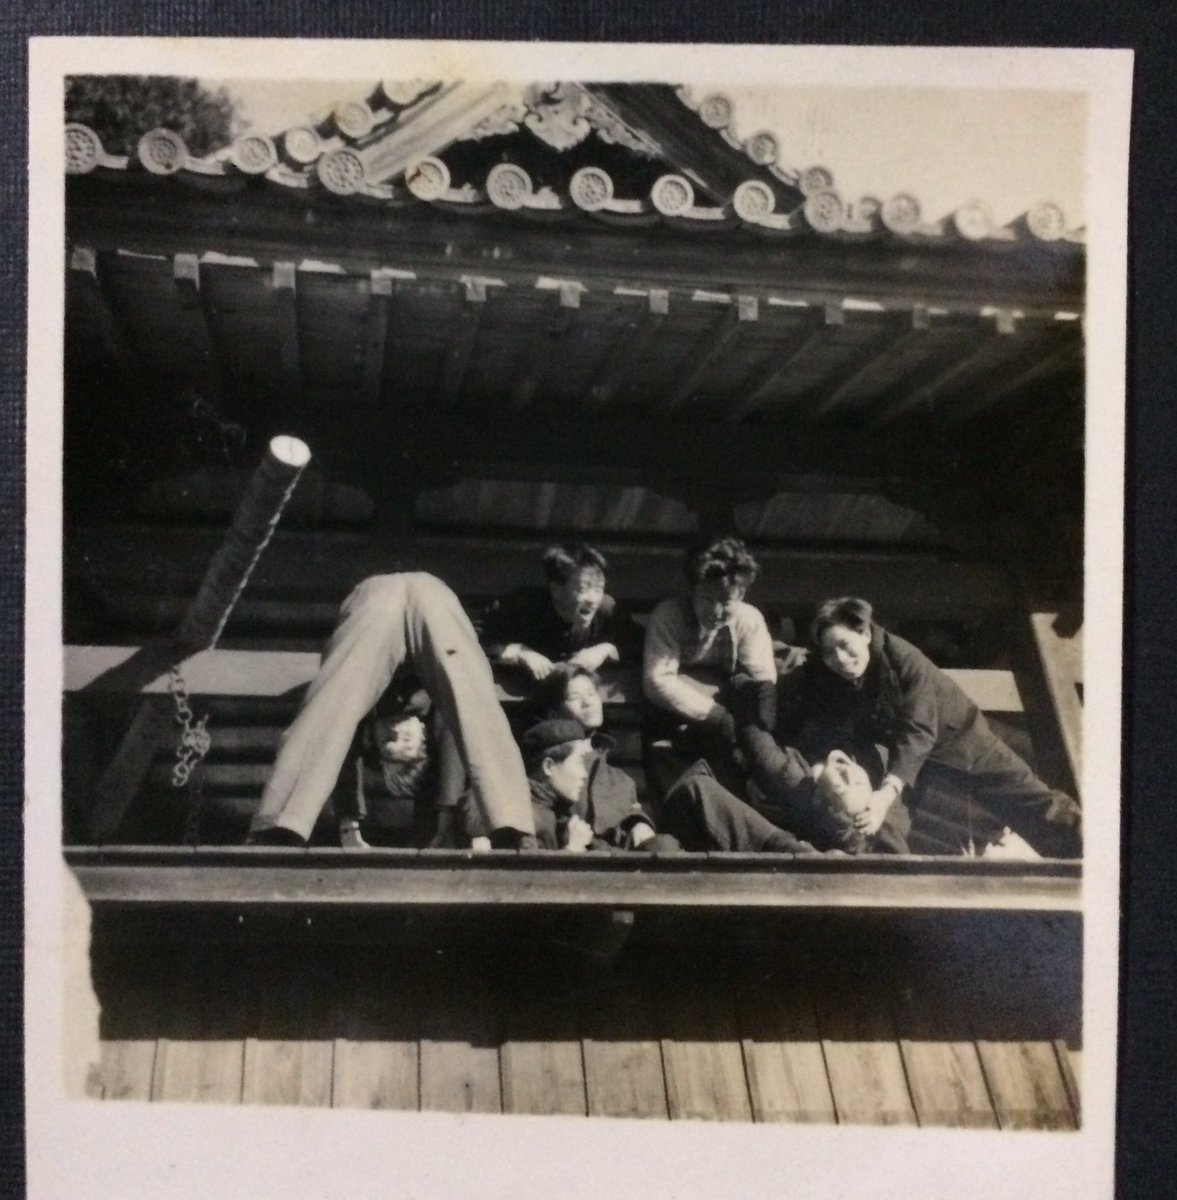 祖母の家で見つけた白黒写真。
戦後すぐに撮られたものとは思えない生き生き感。 